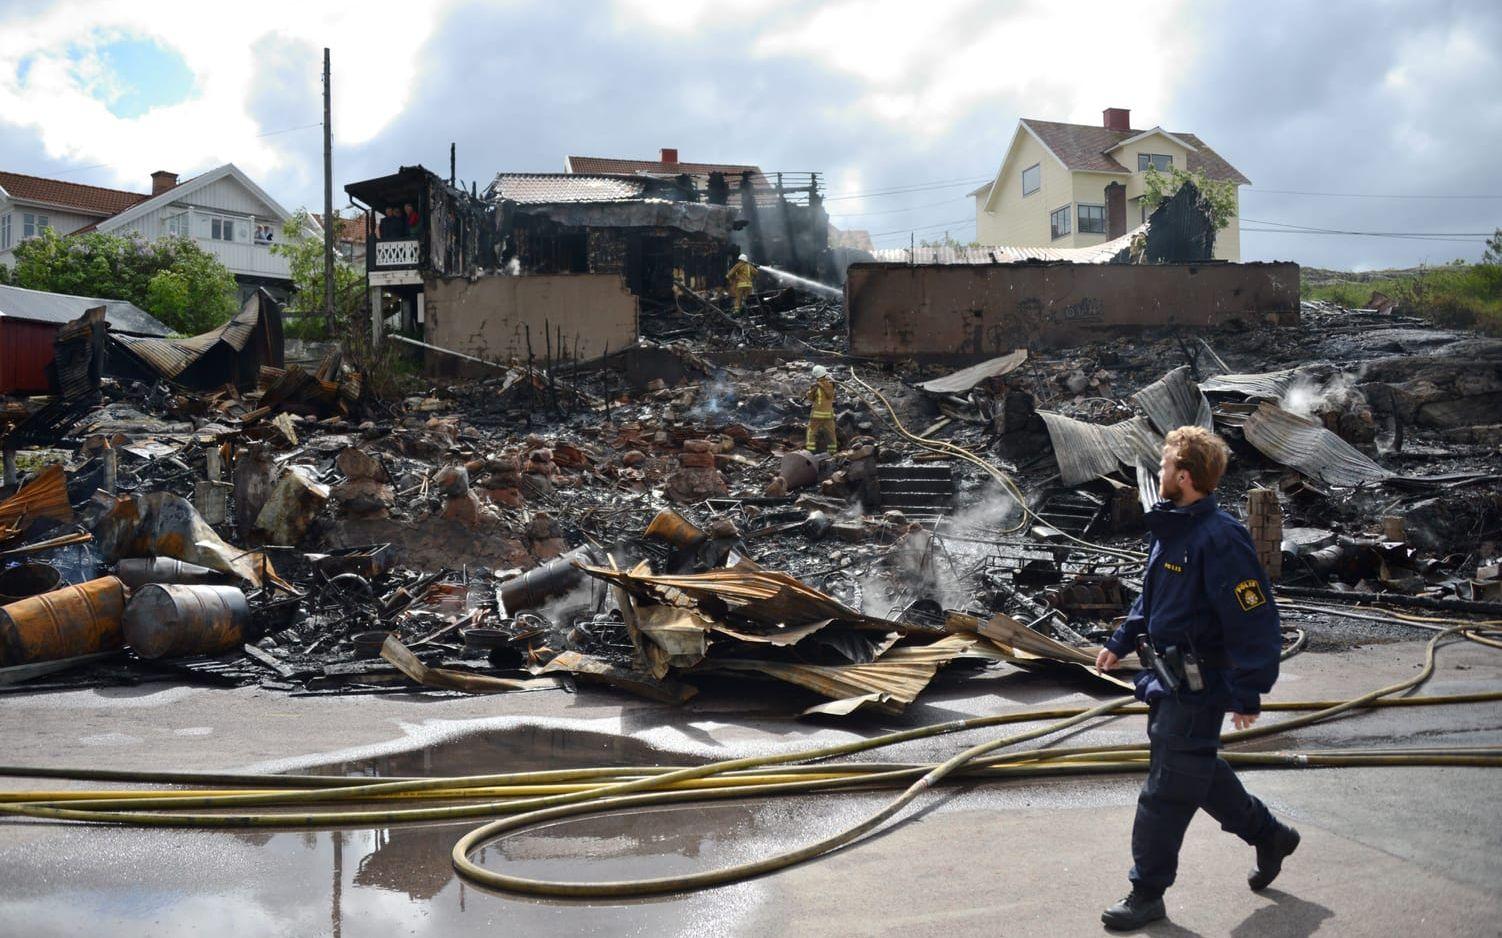 2012 förstördes 22 sjöbodar och ett bostadshus i en kraftig brand på Donsö. Bild: Adam Ihse/TT